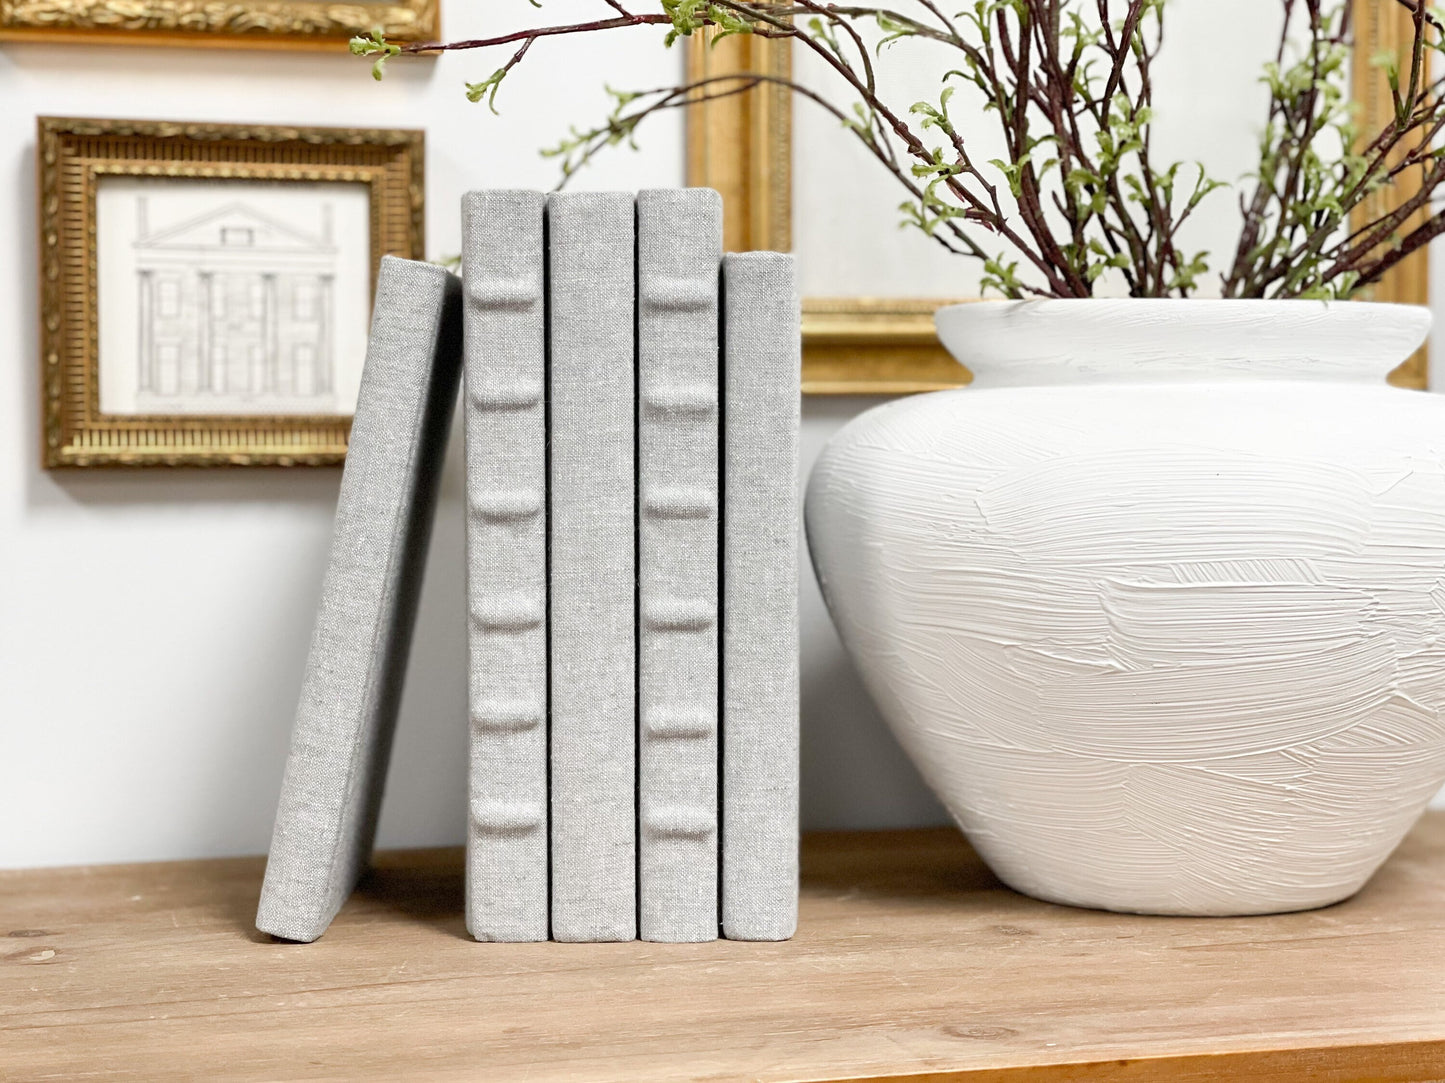 Gray Book Set, Decorative Books for Shelf Decor, Designer Books for Decorating, Book Set